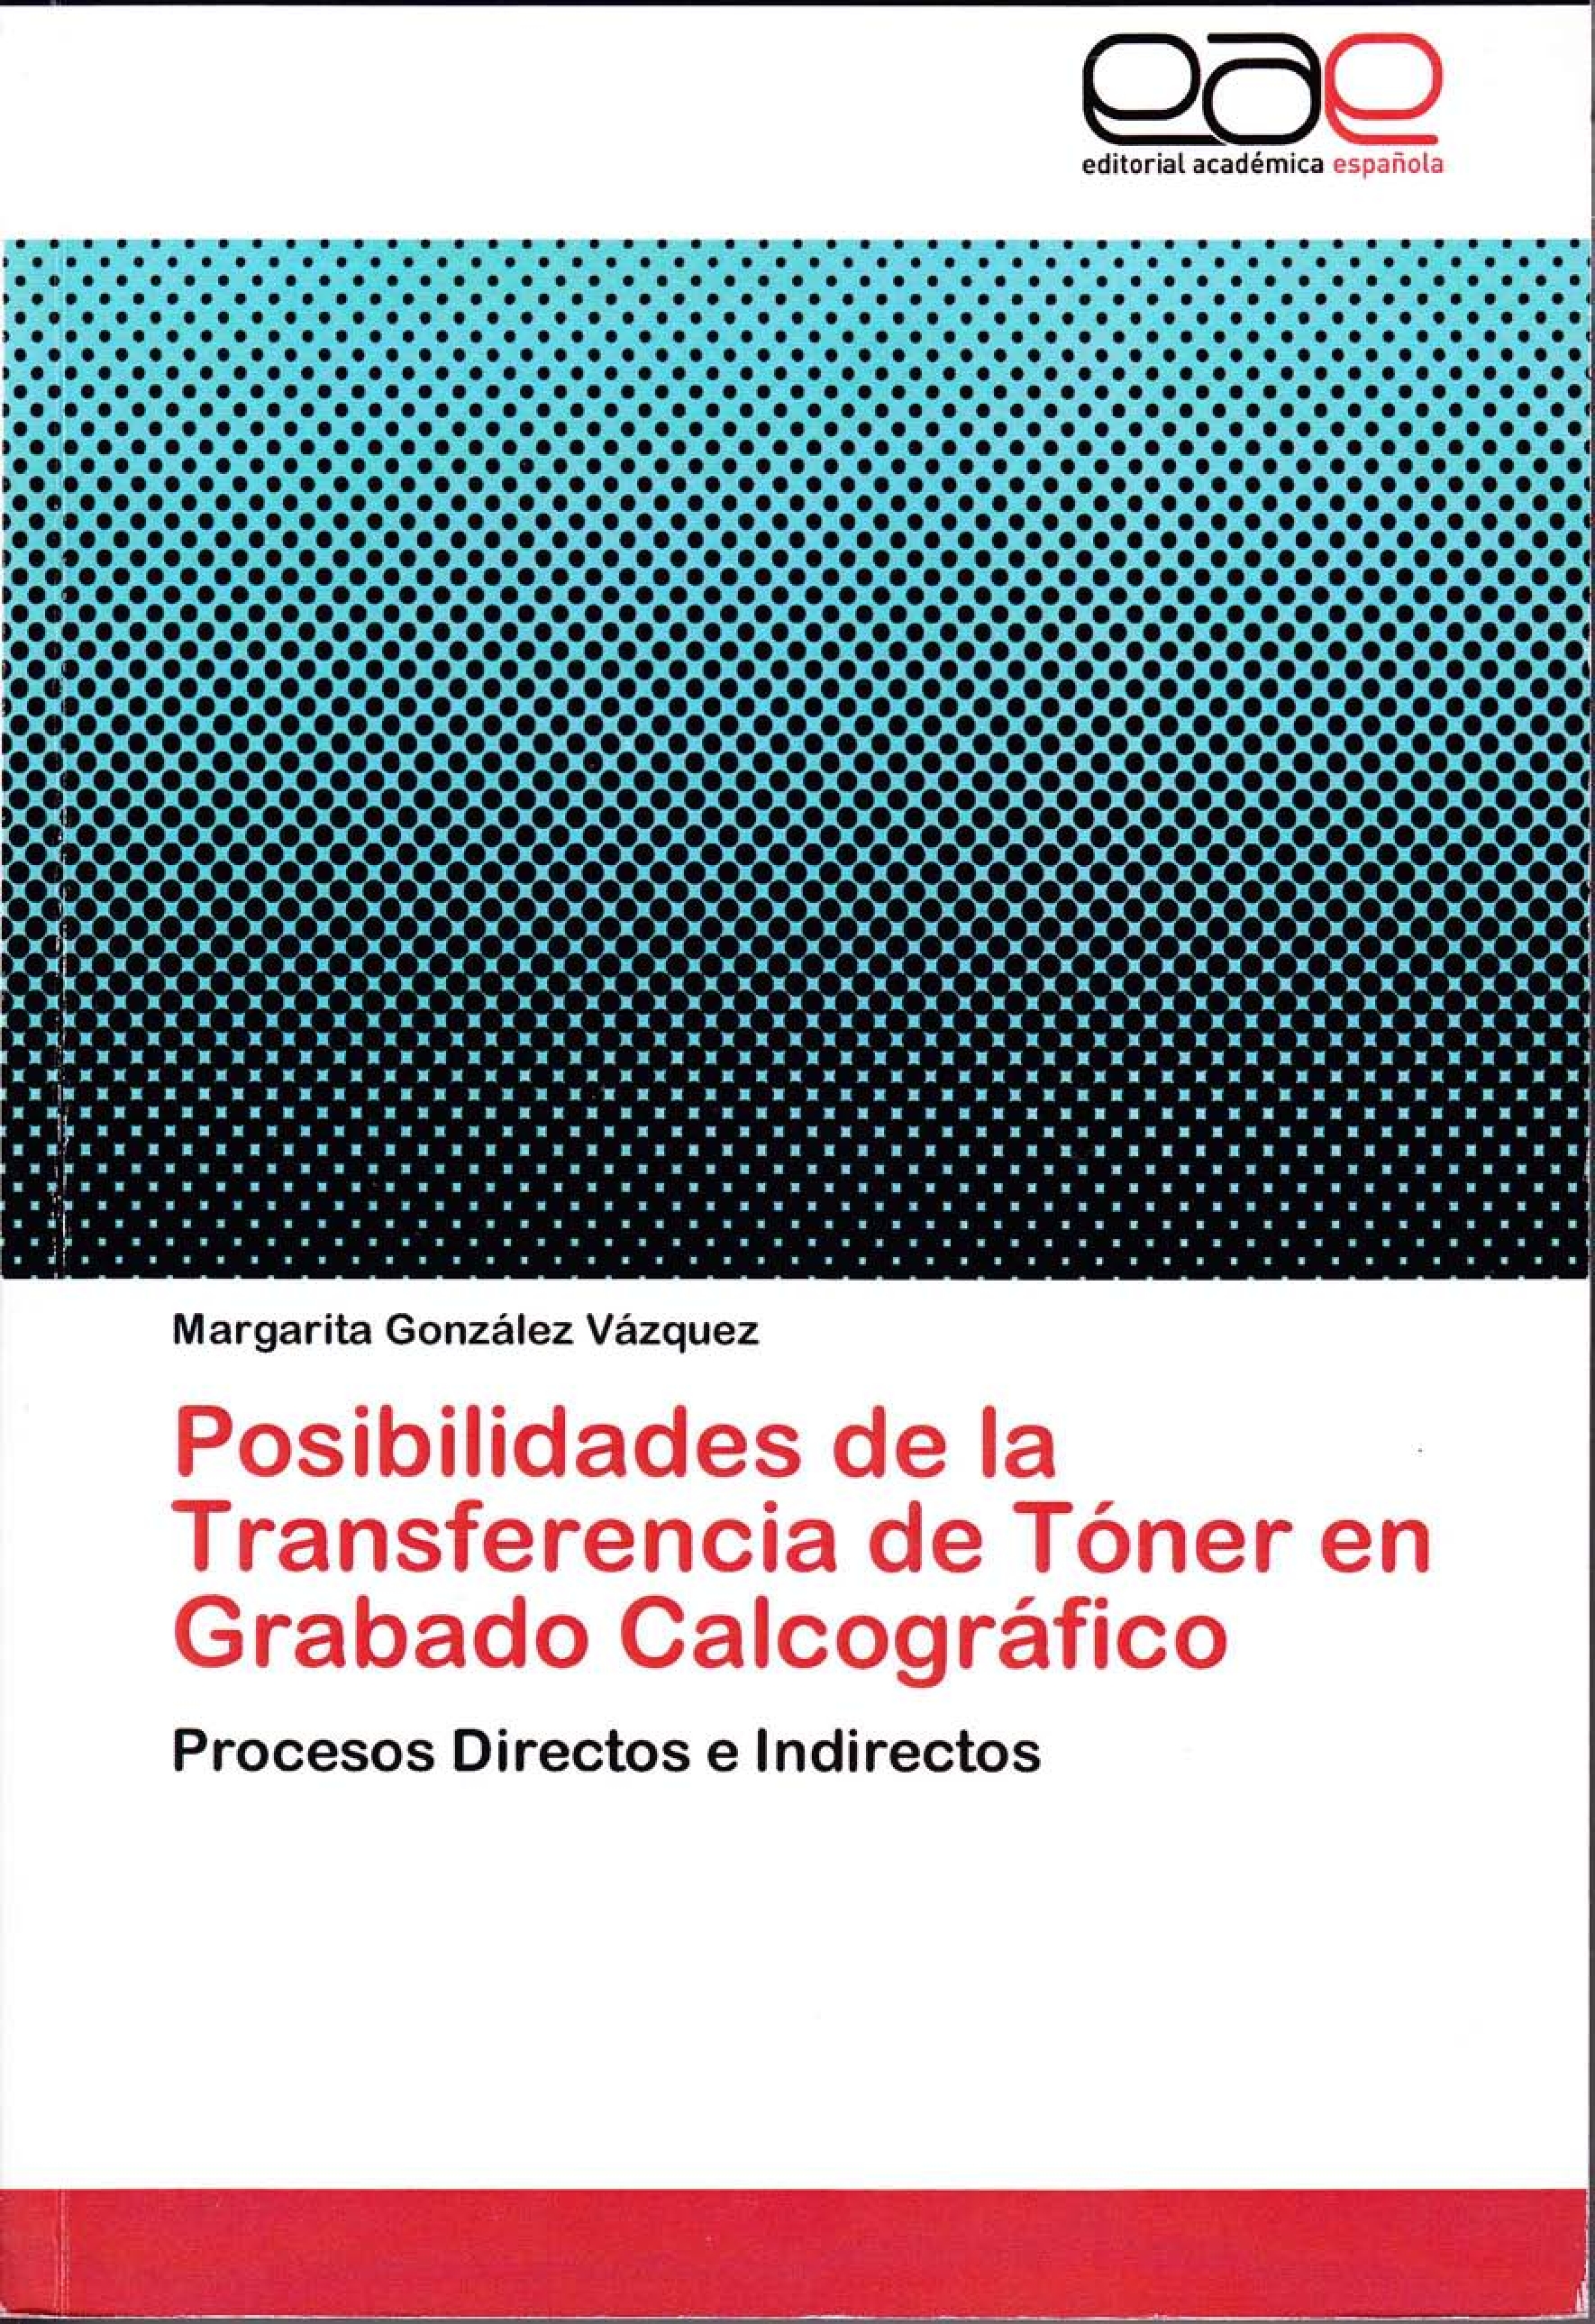 Posibilidades de la transferencia de tóner en Grabado Calcográfico. Procesos directos e indirectos. 